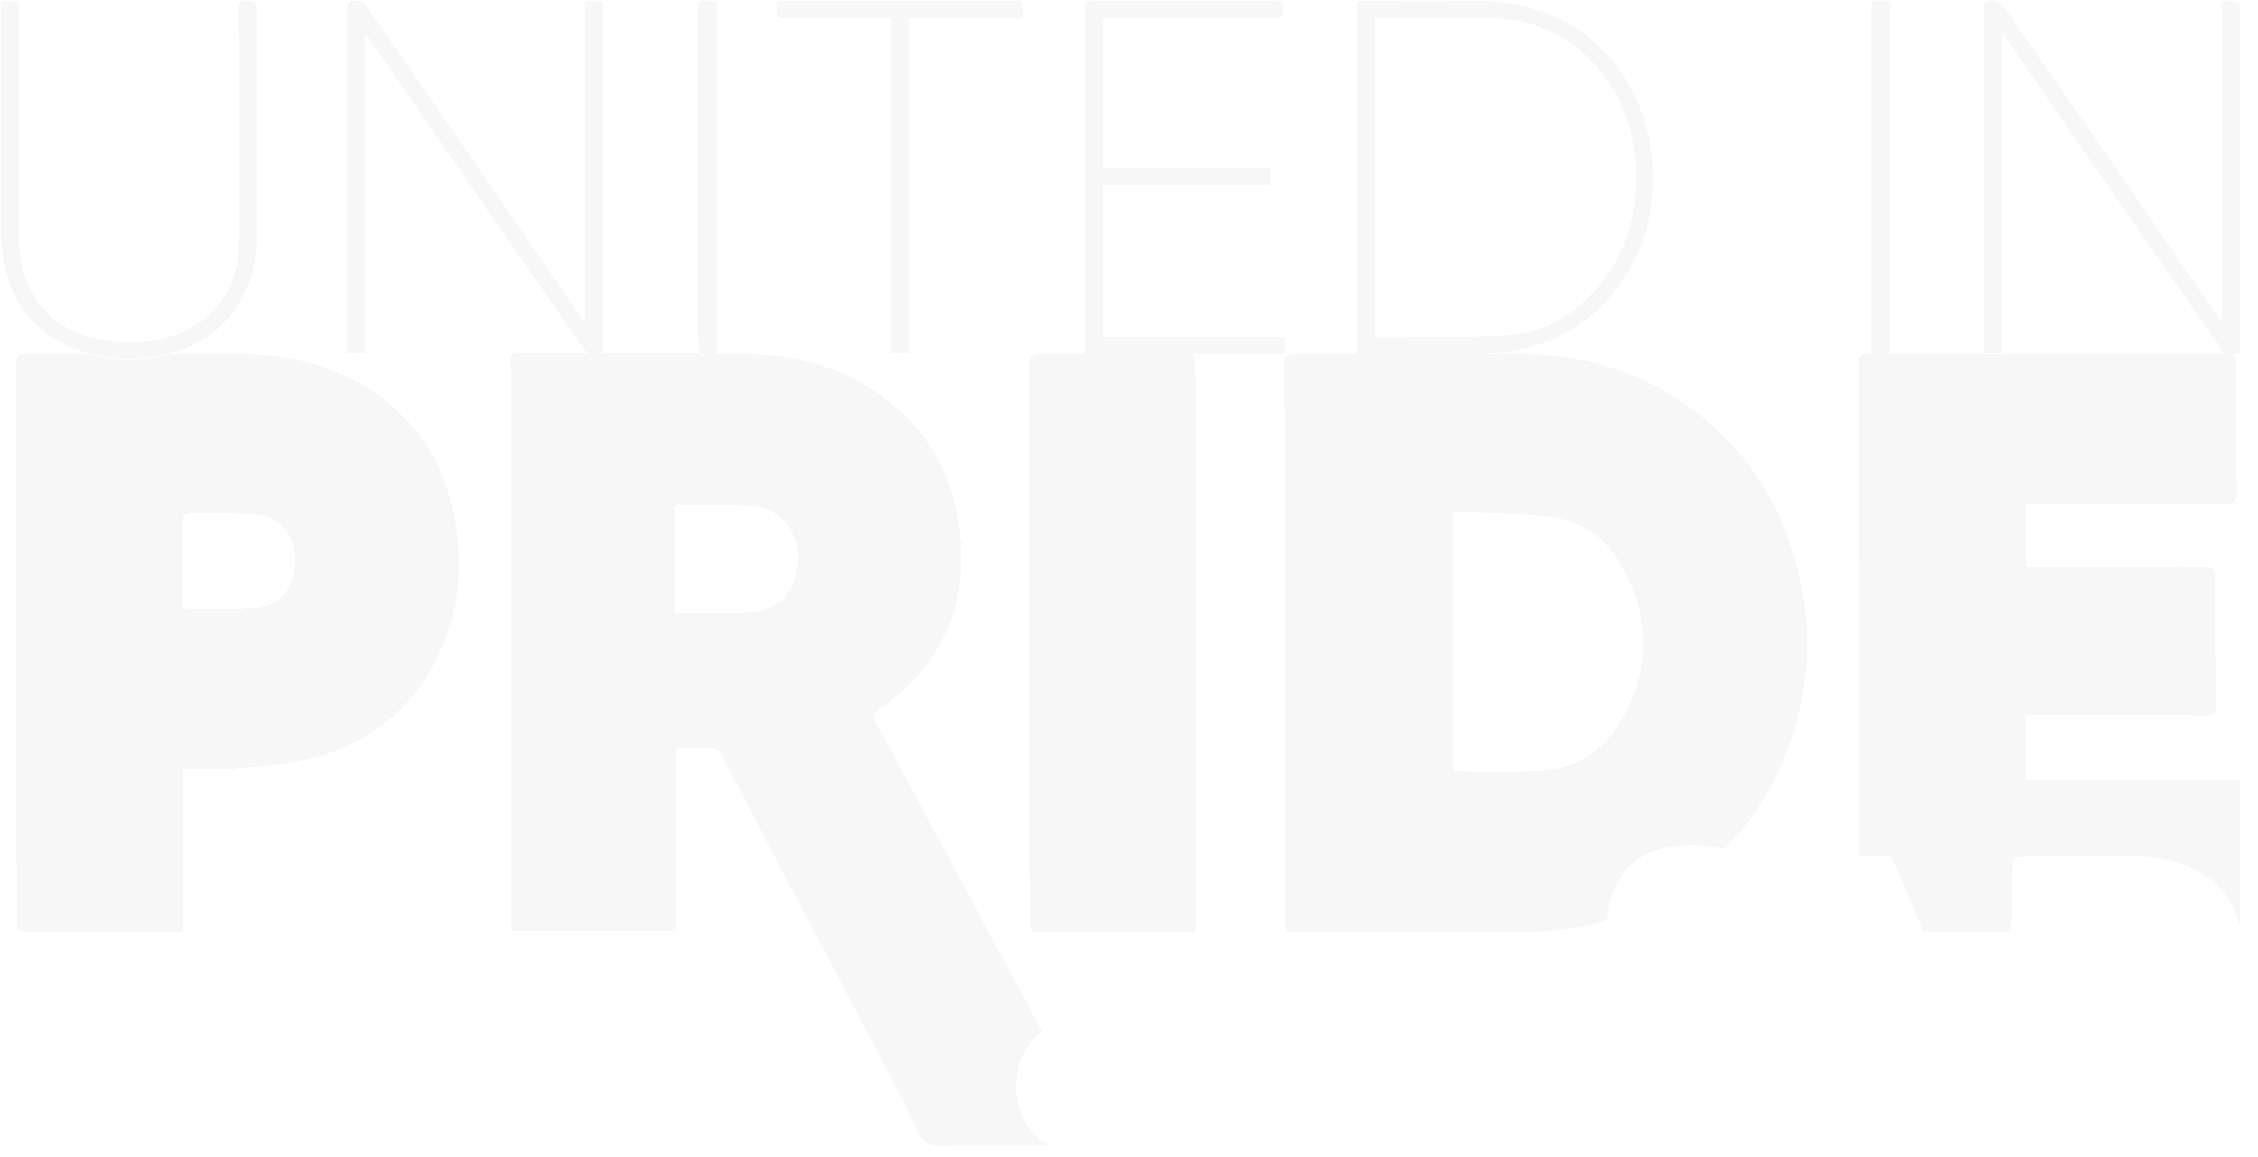 United In Pride amfAR